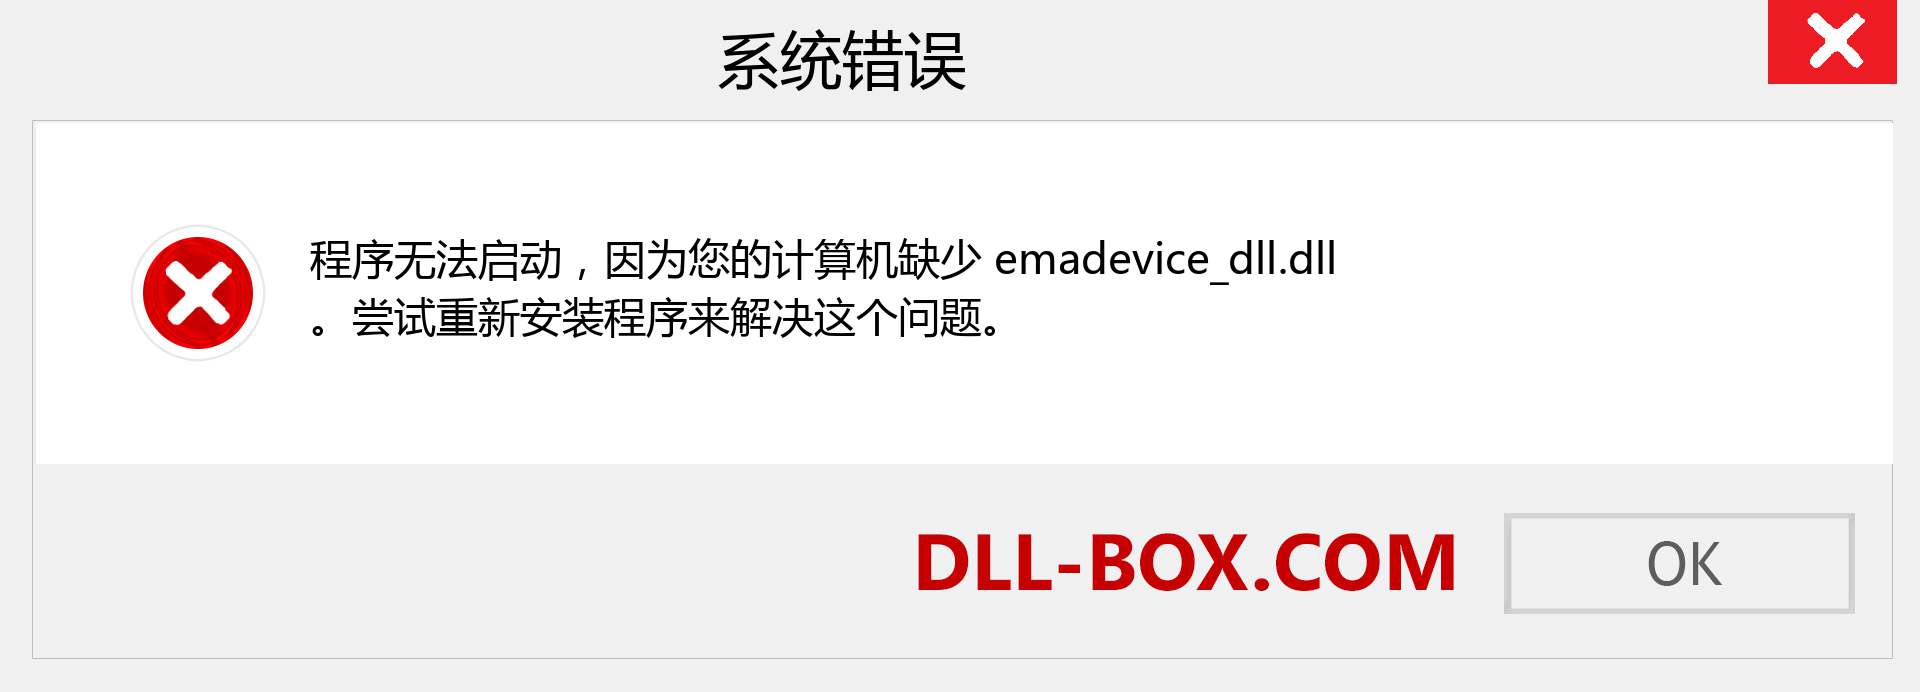 emadevice_dll.dll 文件丢失？。 适用于 Windows 7、8、10 的下载 - 修复 Windows、照片、图像上的 emadevice_dll dll 丢失错误